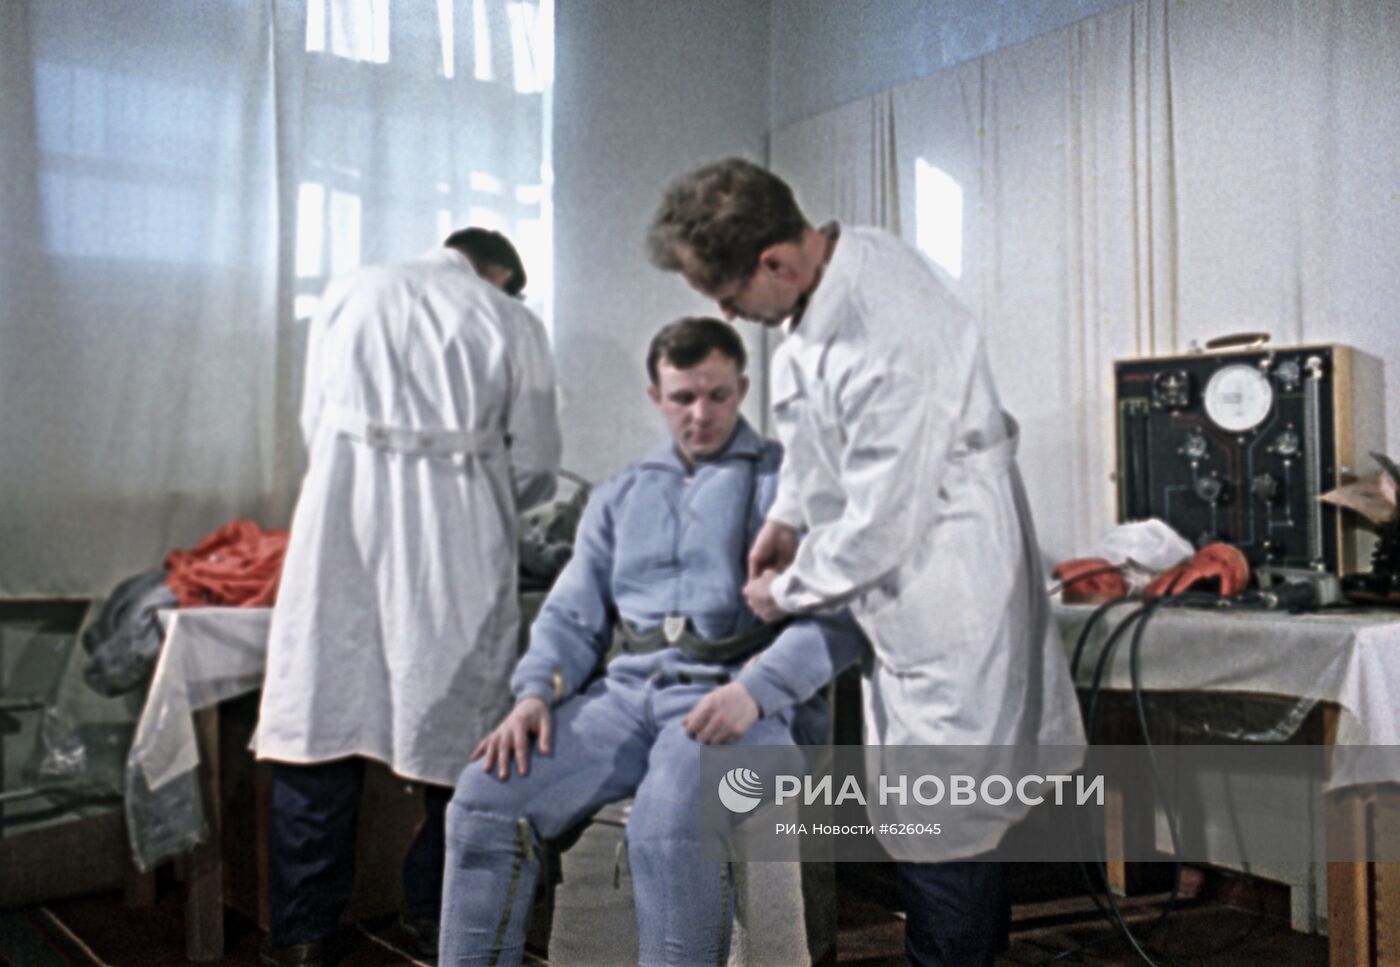 Юрий Гагарин проходит медицинский осмотр перед полетом